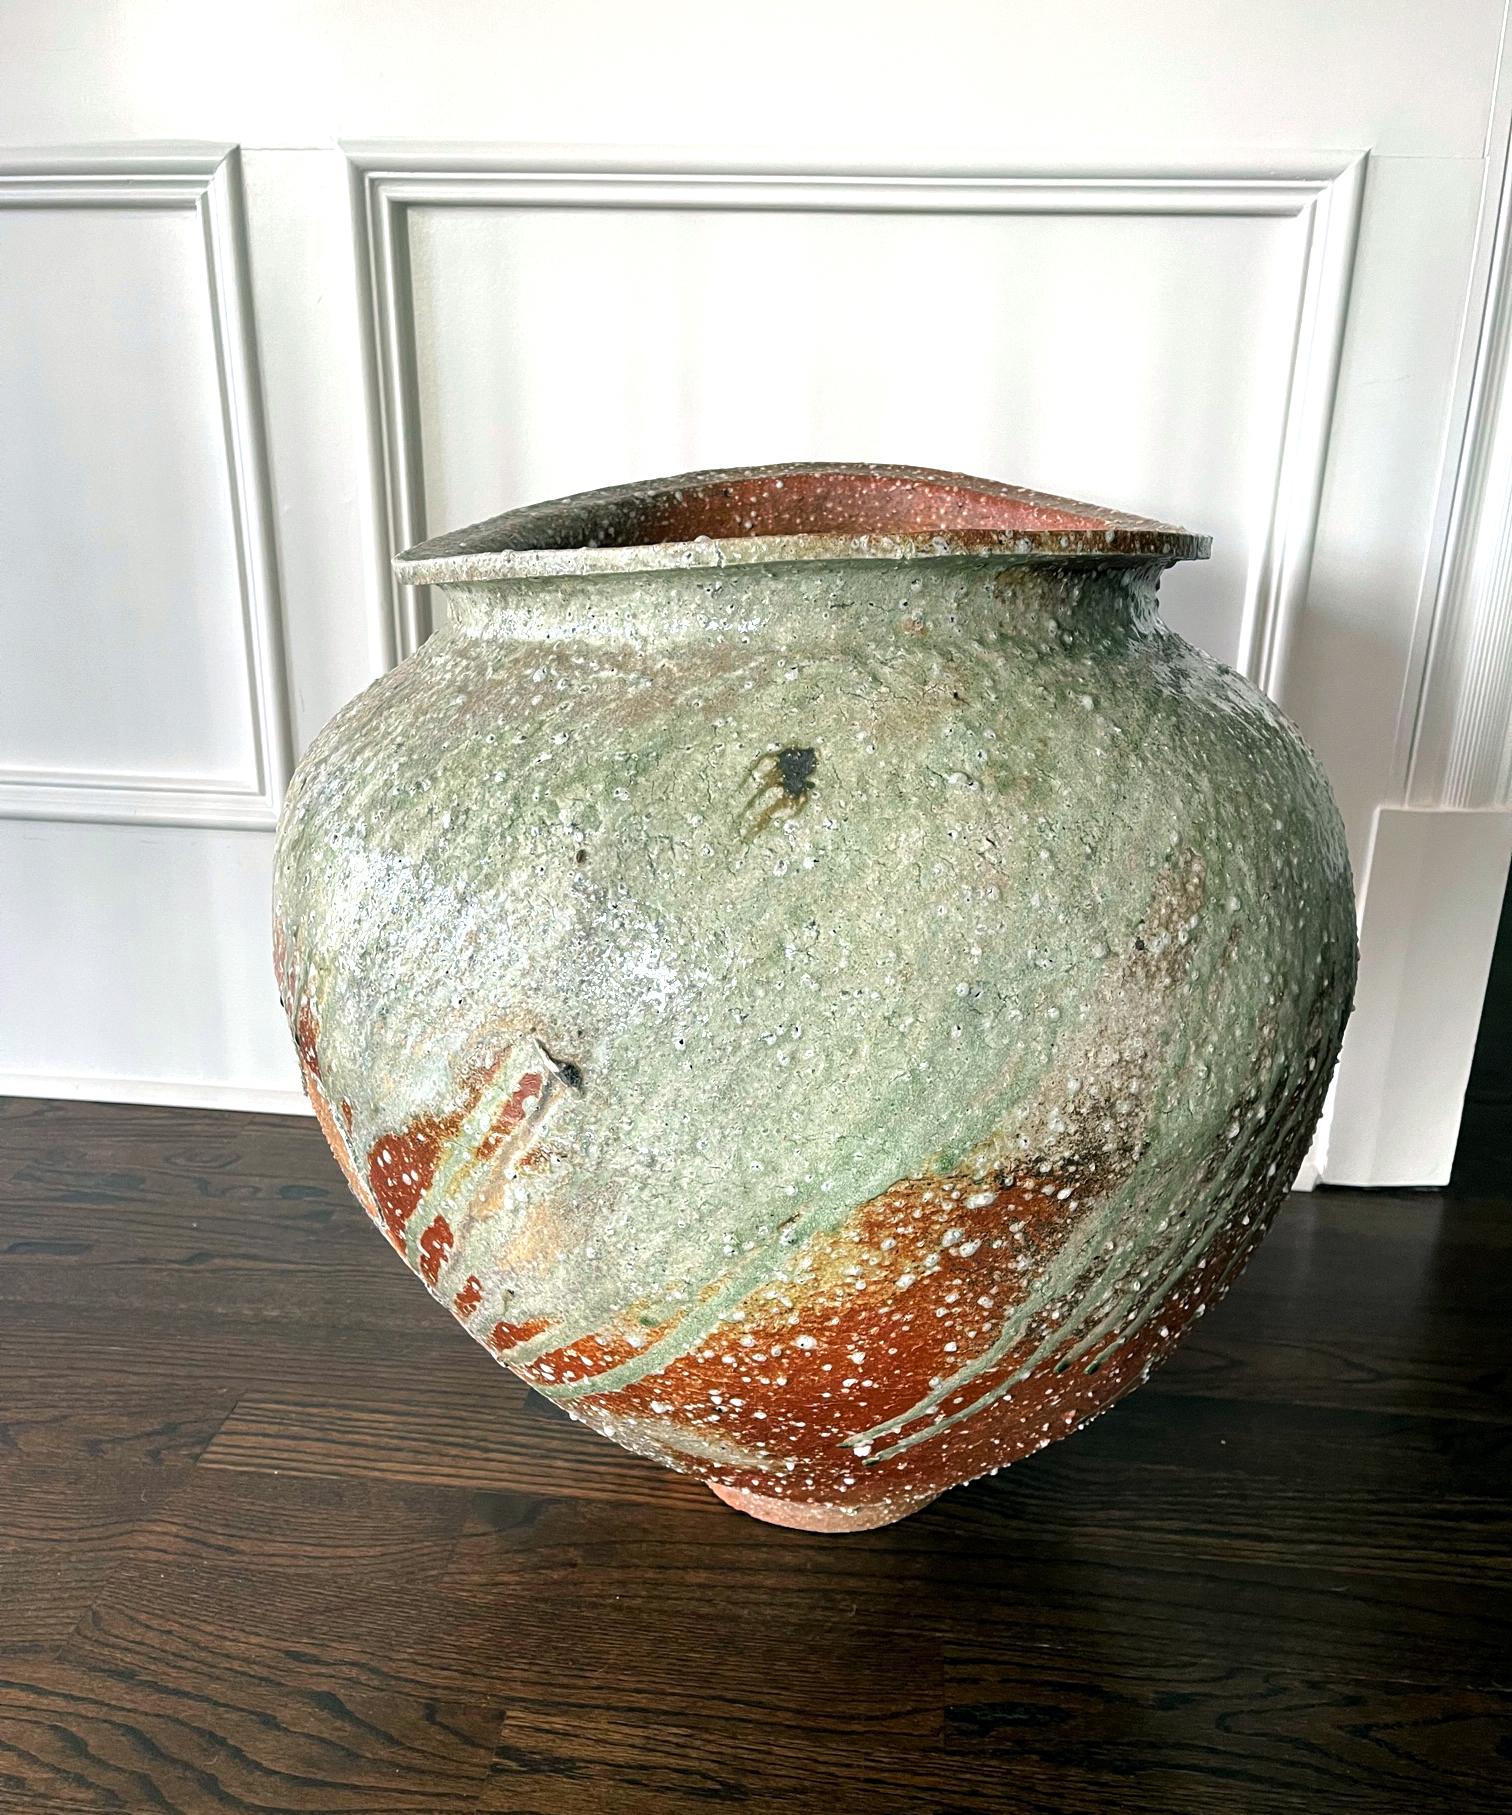 Ein massiver Tsubo-Bodenkrug aus Steinzeug, geschaffen von dem japanischen zeitgenössischen Keramikkünstler Kai Tsujimura (1976-). Das schwere Gefäß mit seinem beeindruckenden Volumen wurde in der Tradition der Iga-Ware aus lokalem grobsandigem Ton